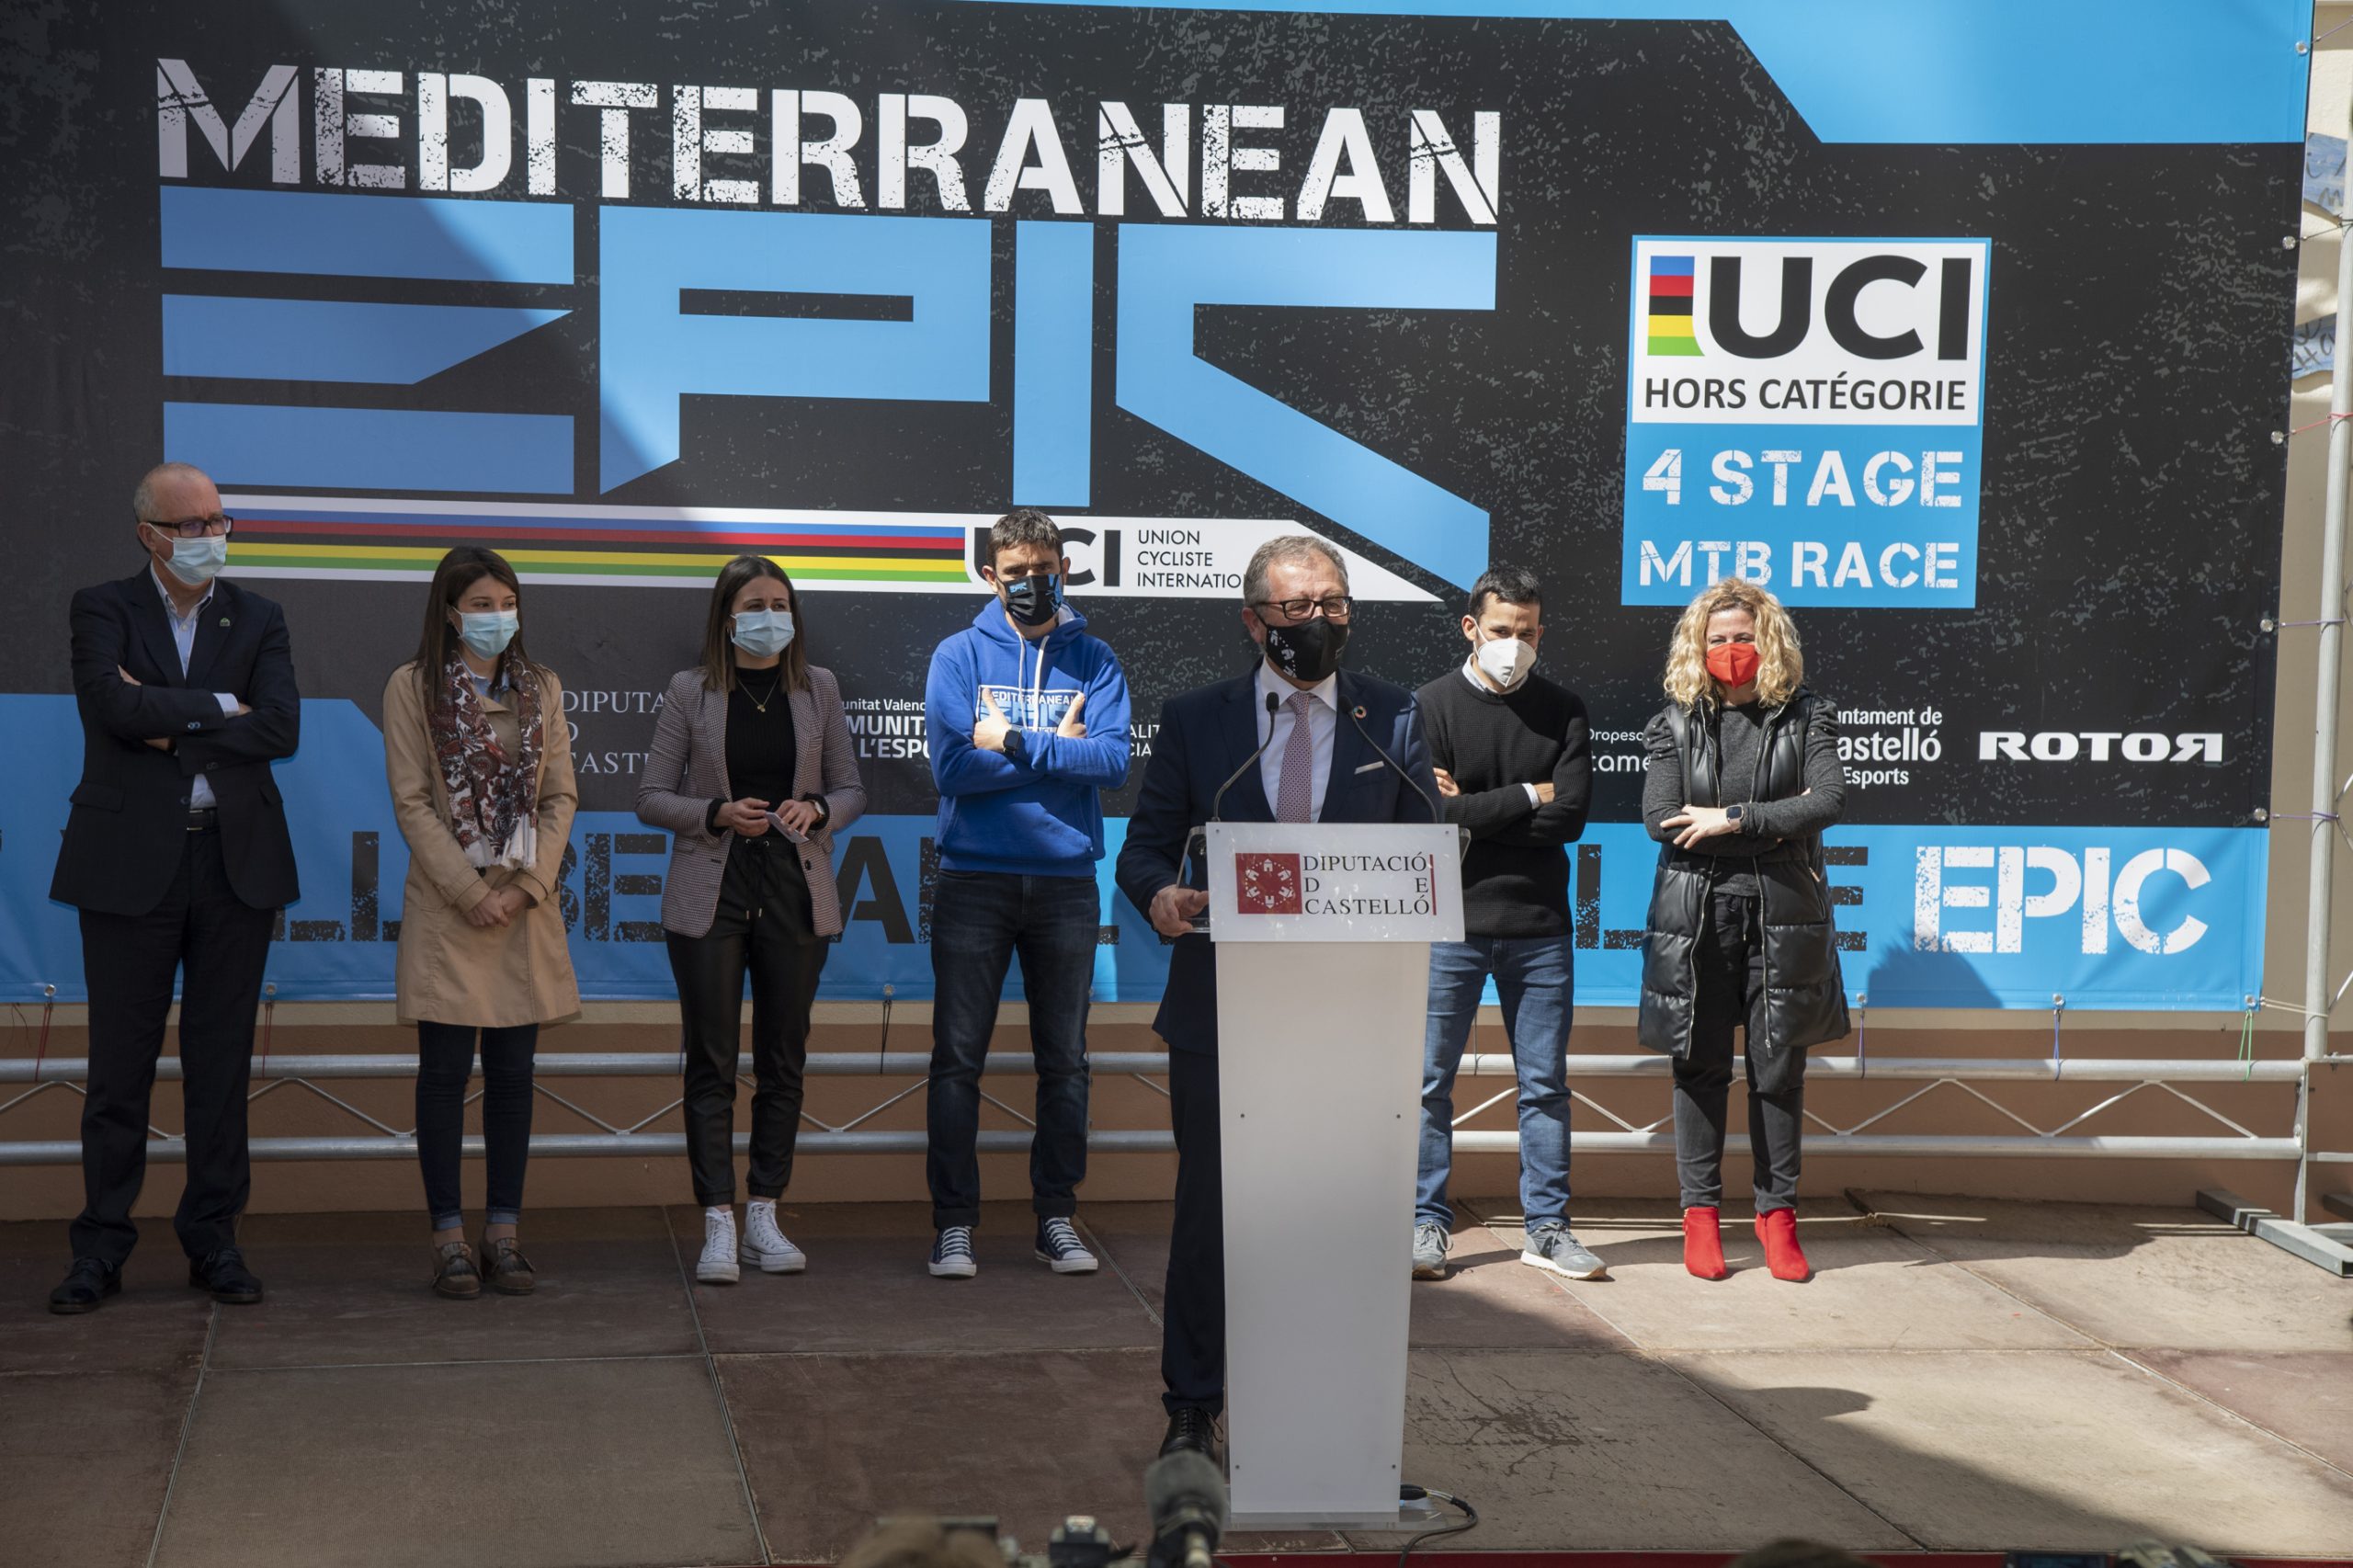 Martí celebra la llegada de 500 ciclistas de 40 países para participar desde el jueves en la IV Mediterranean Epic